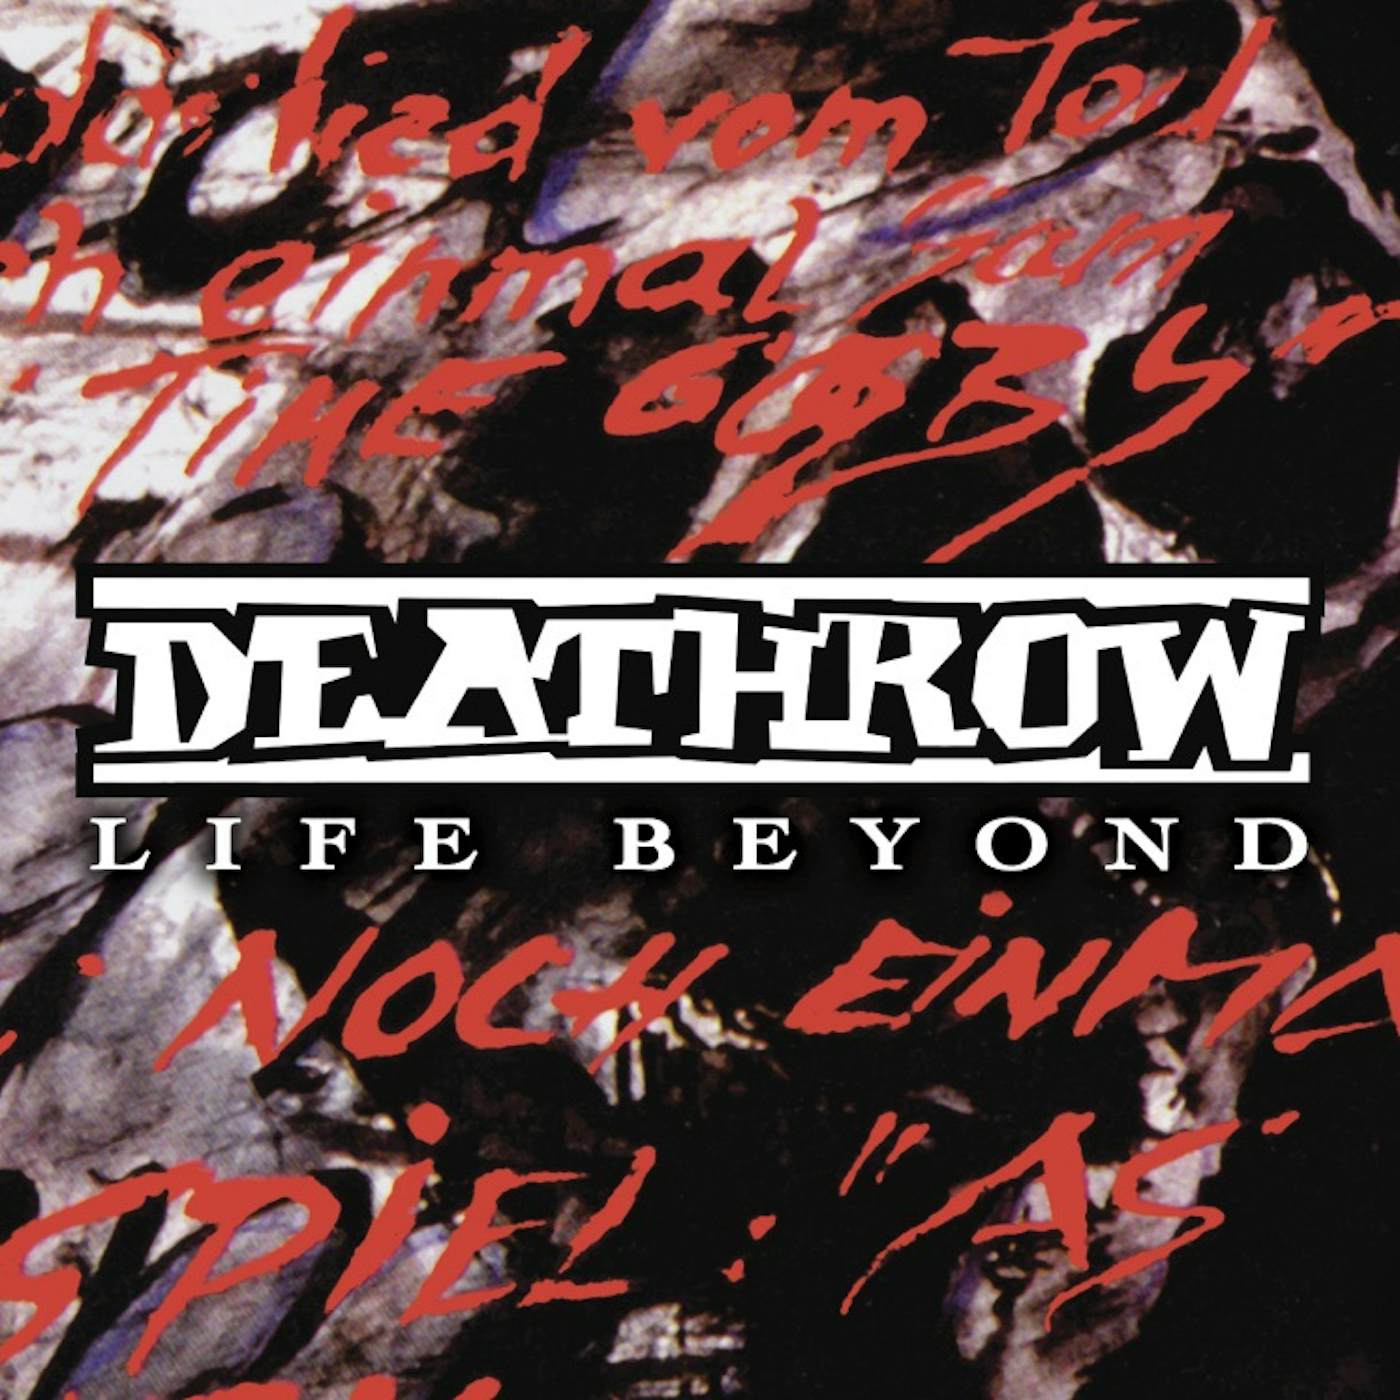 Deathrow LIFE BEYOND CD